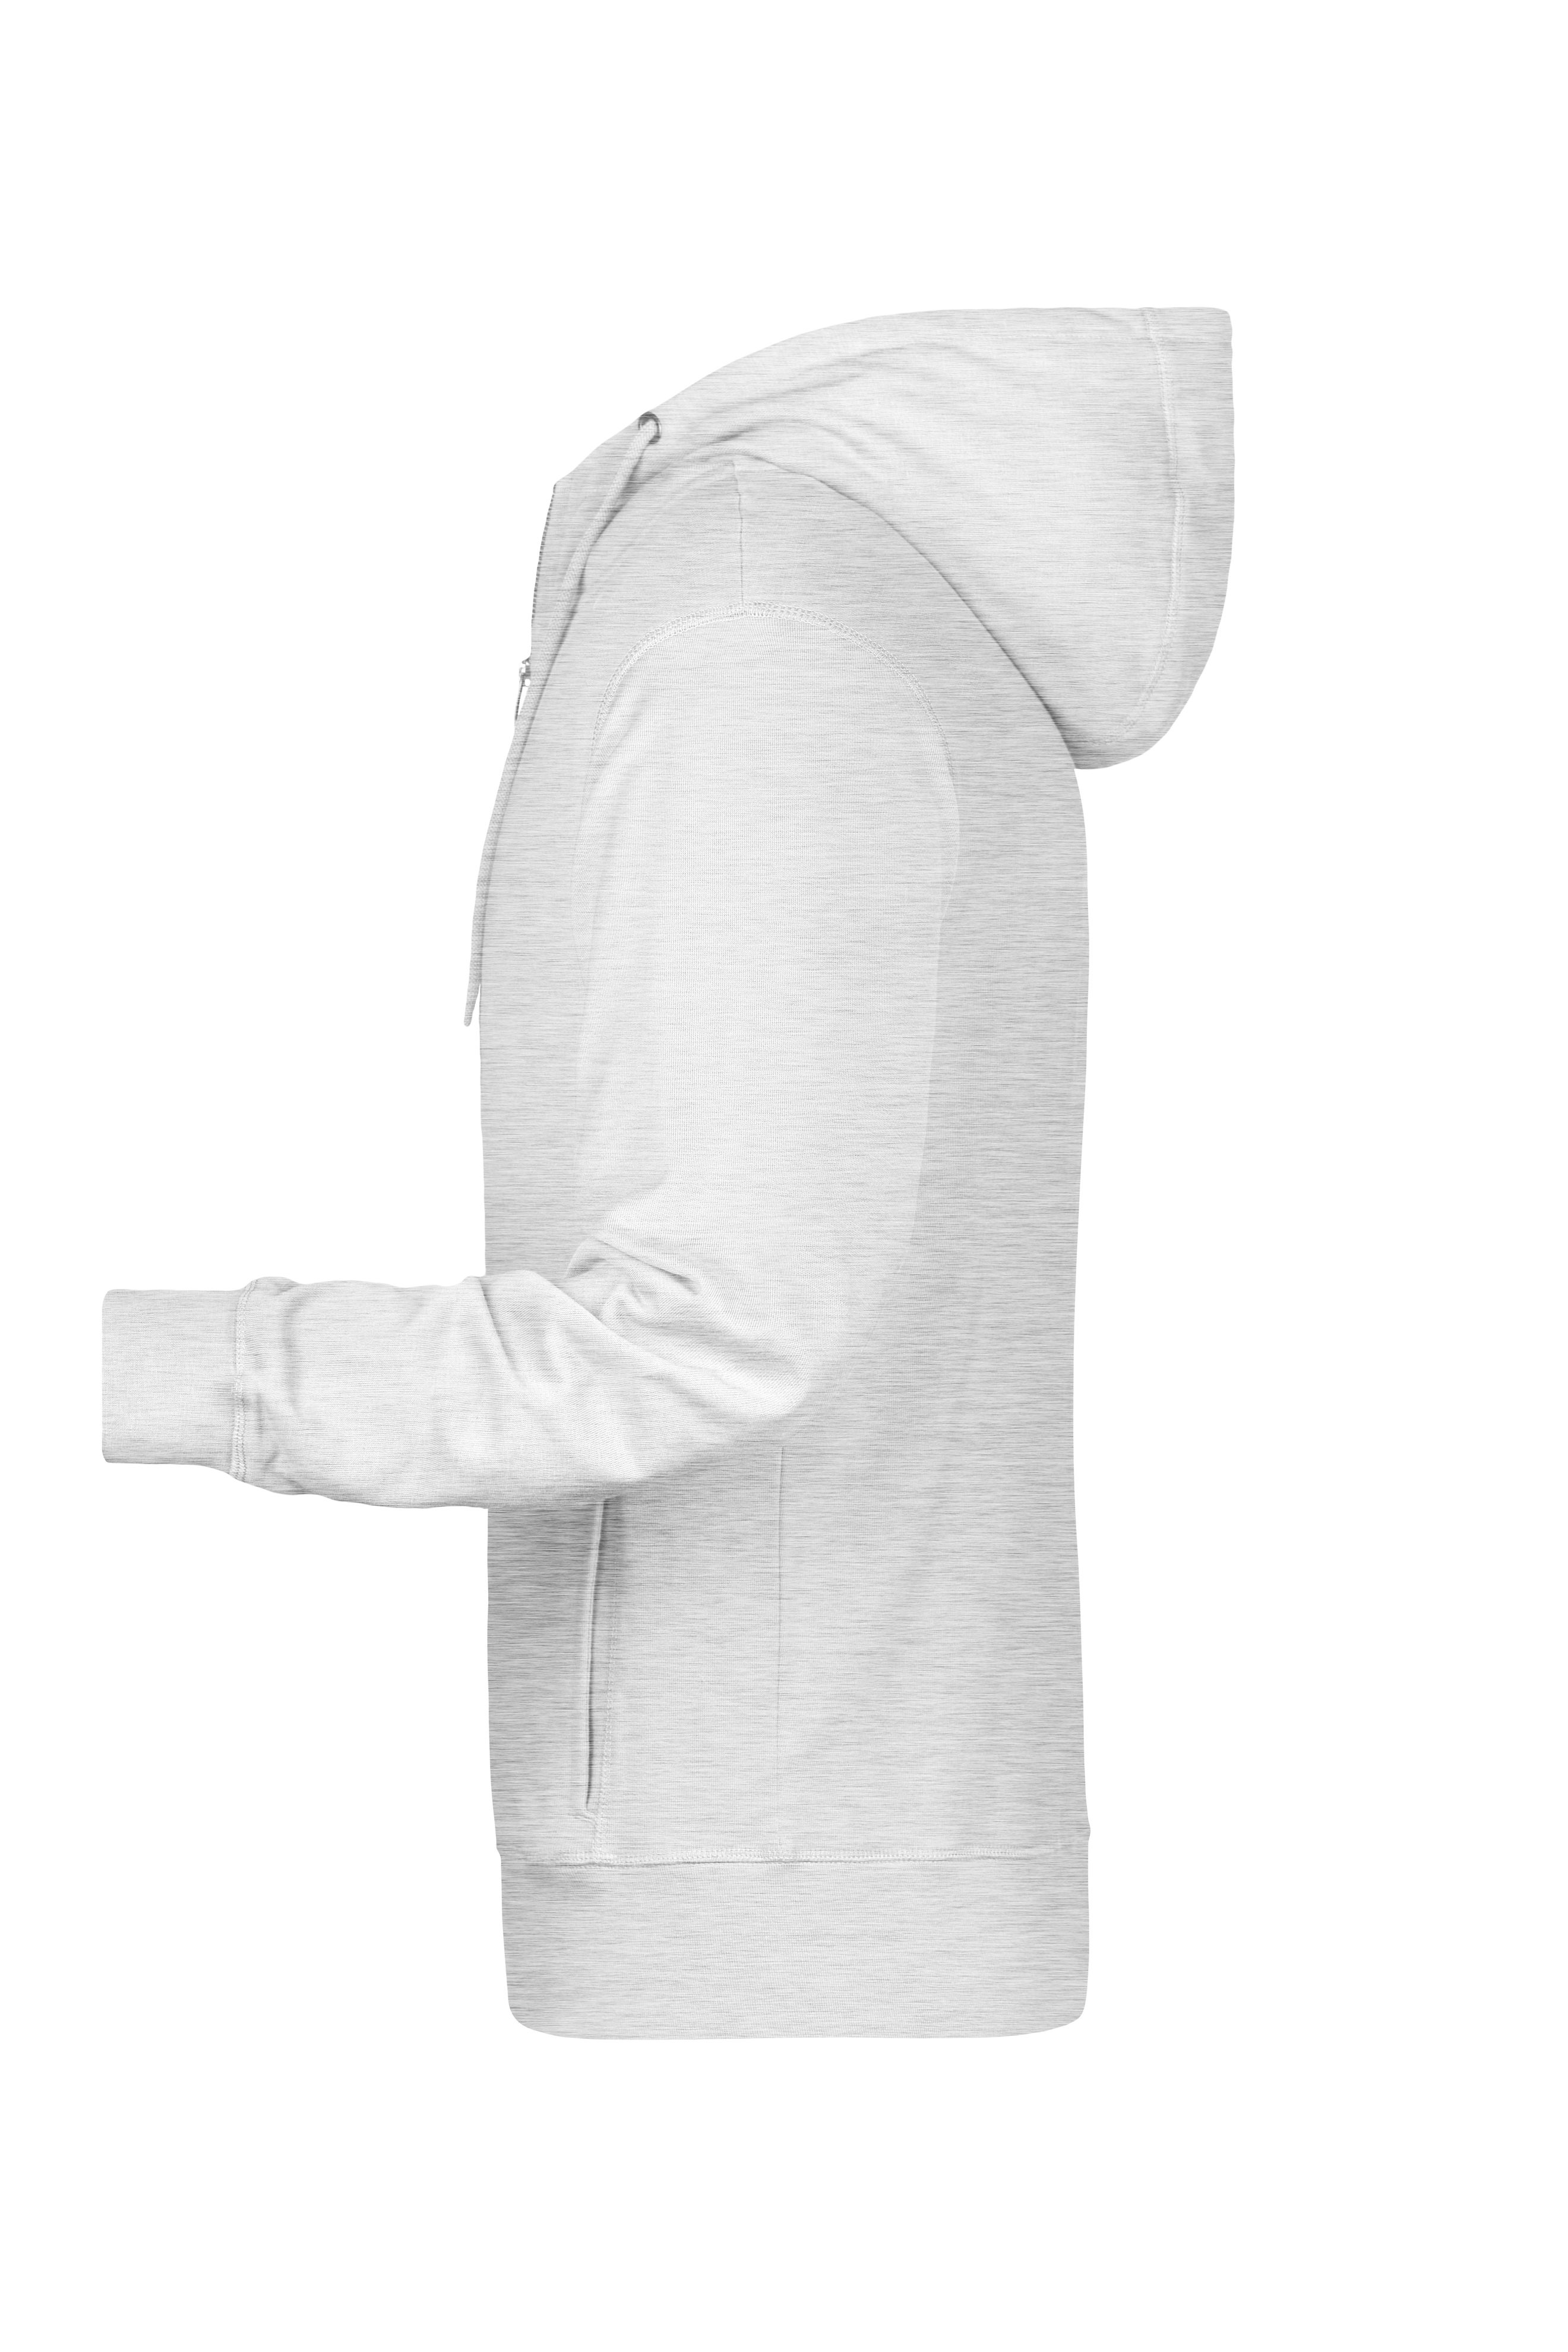 Men's Zip Hoody 8026 Sweat-Jacke mit Kapuze und Reißverschluss